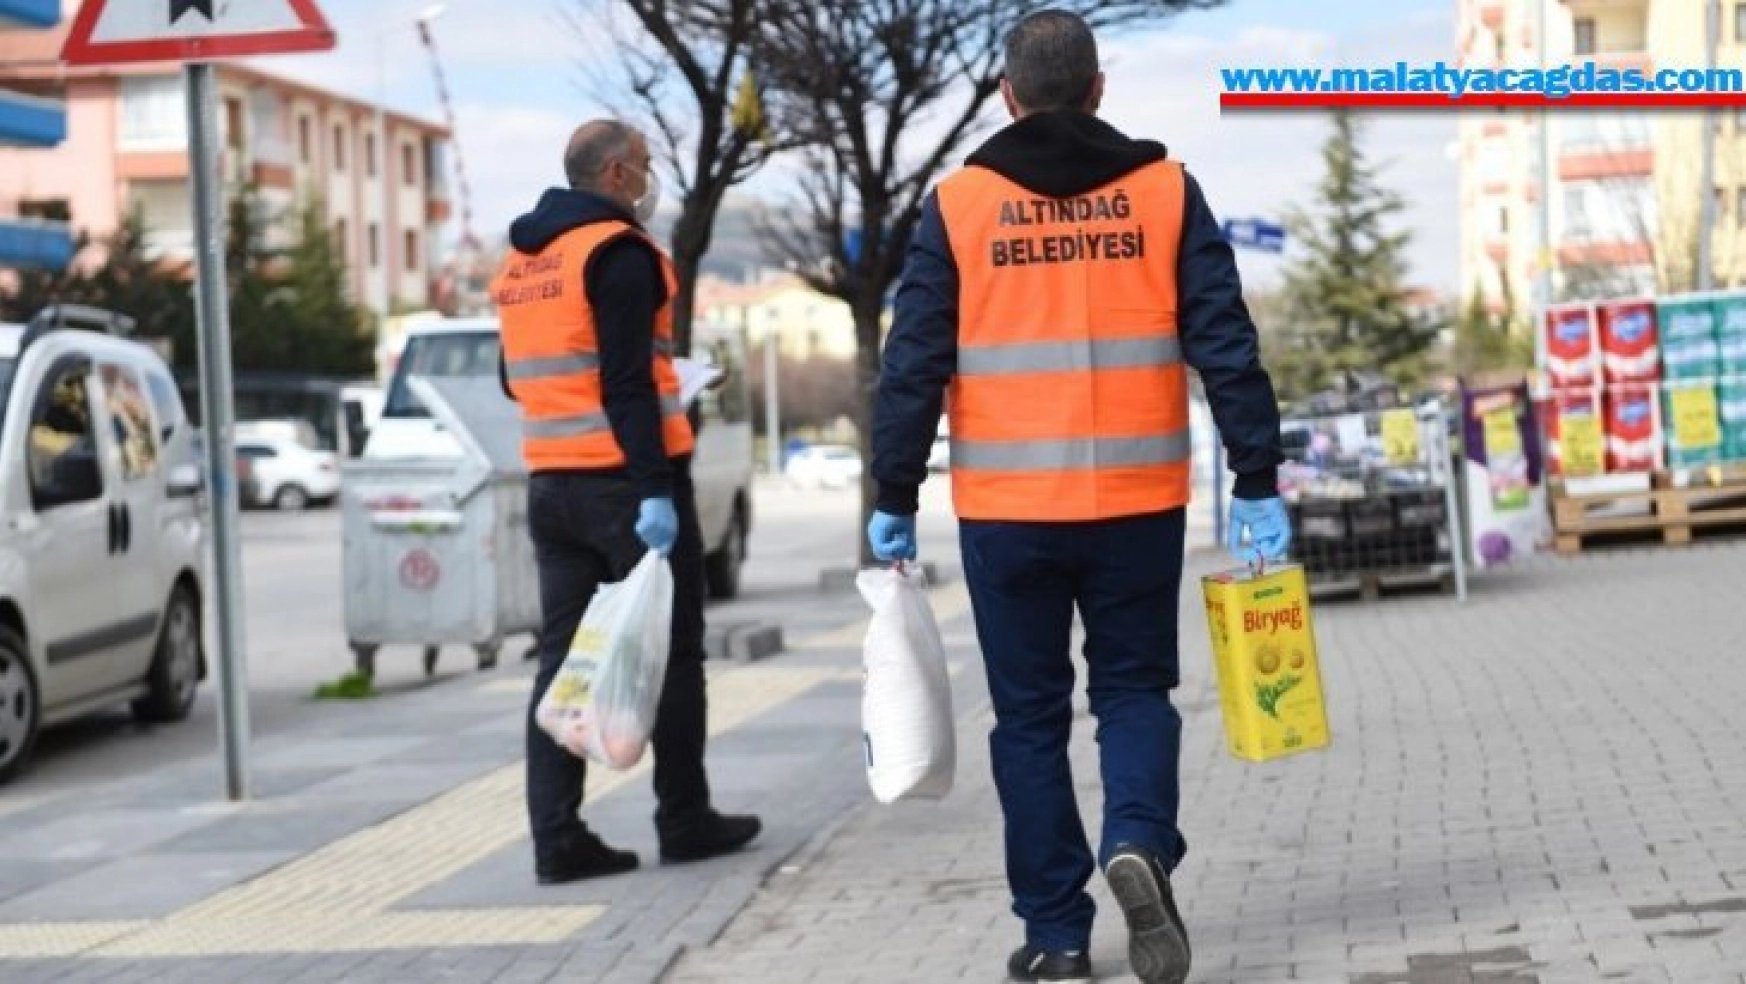 Altındağ'da 60 yaş üstü vatandaşlara alışveriş desteği